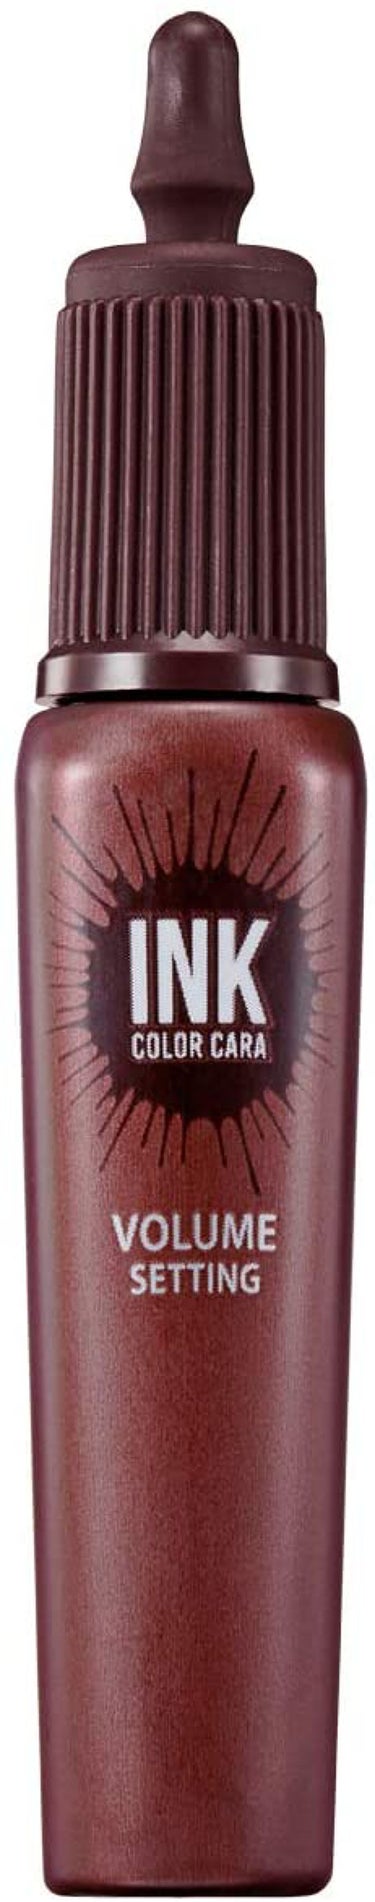 ピンク モーメント インク カラー カラ 09 PINK TEA BROWN